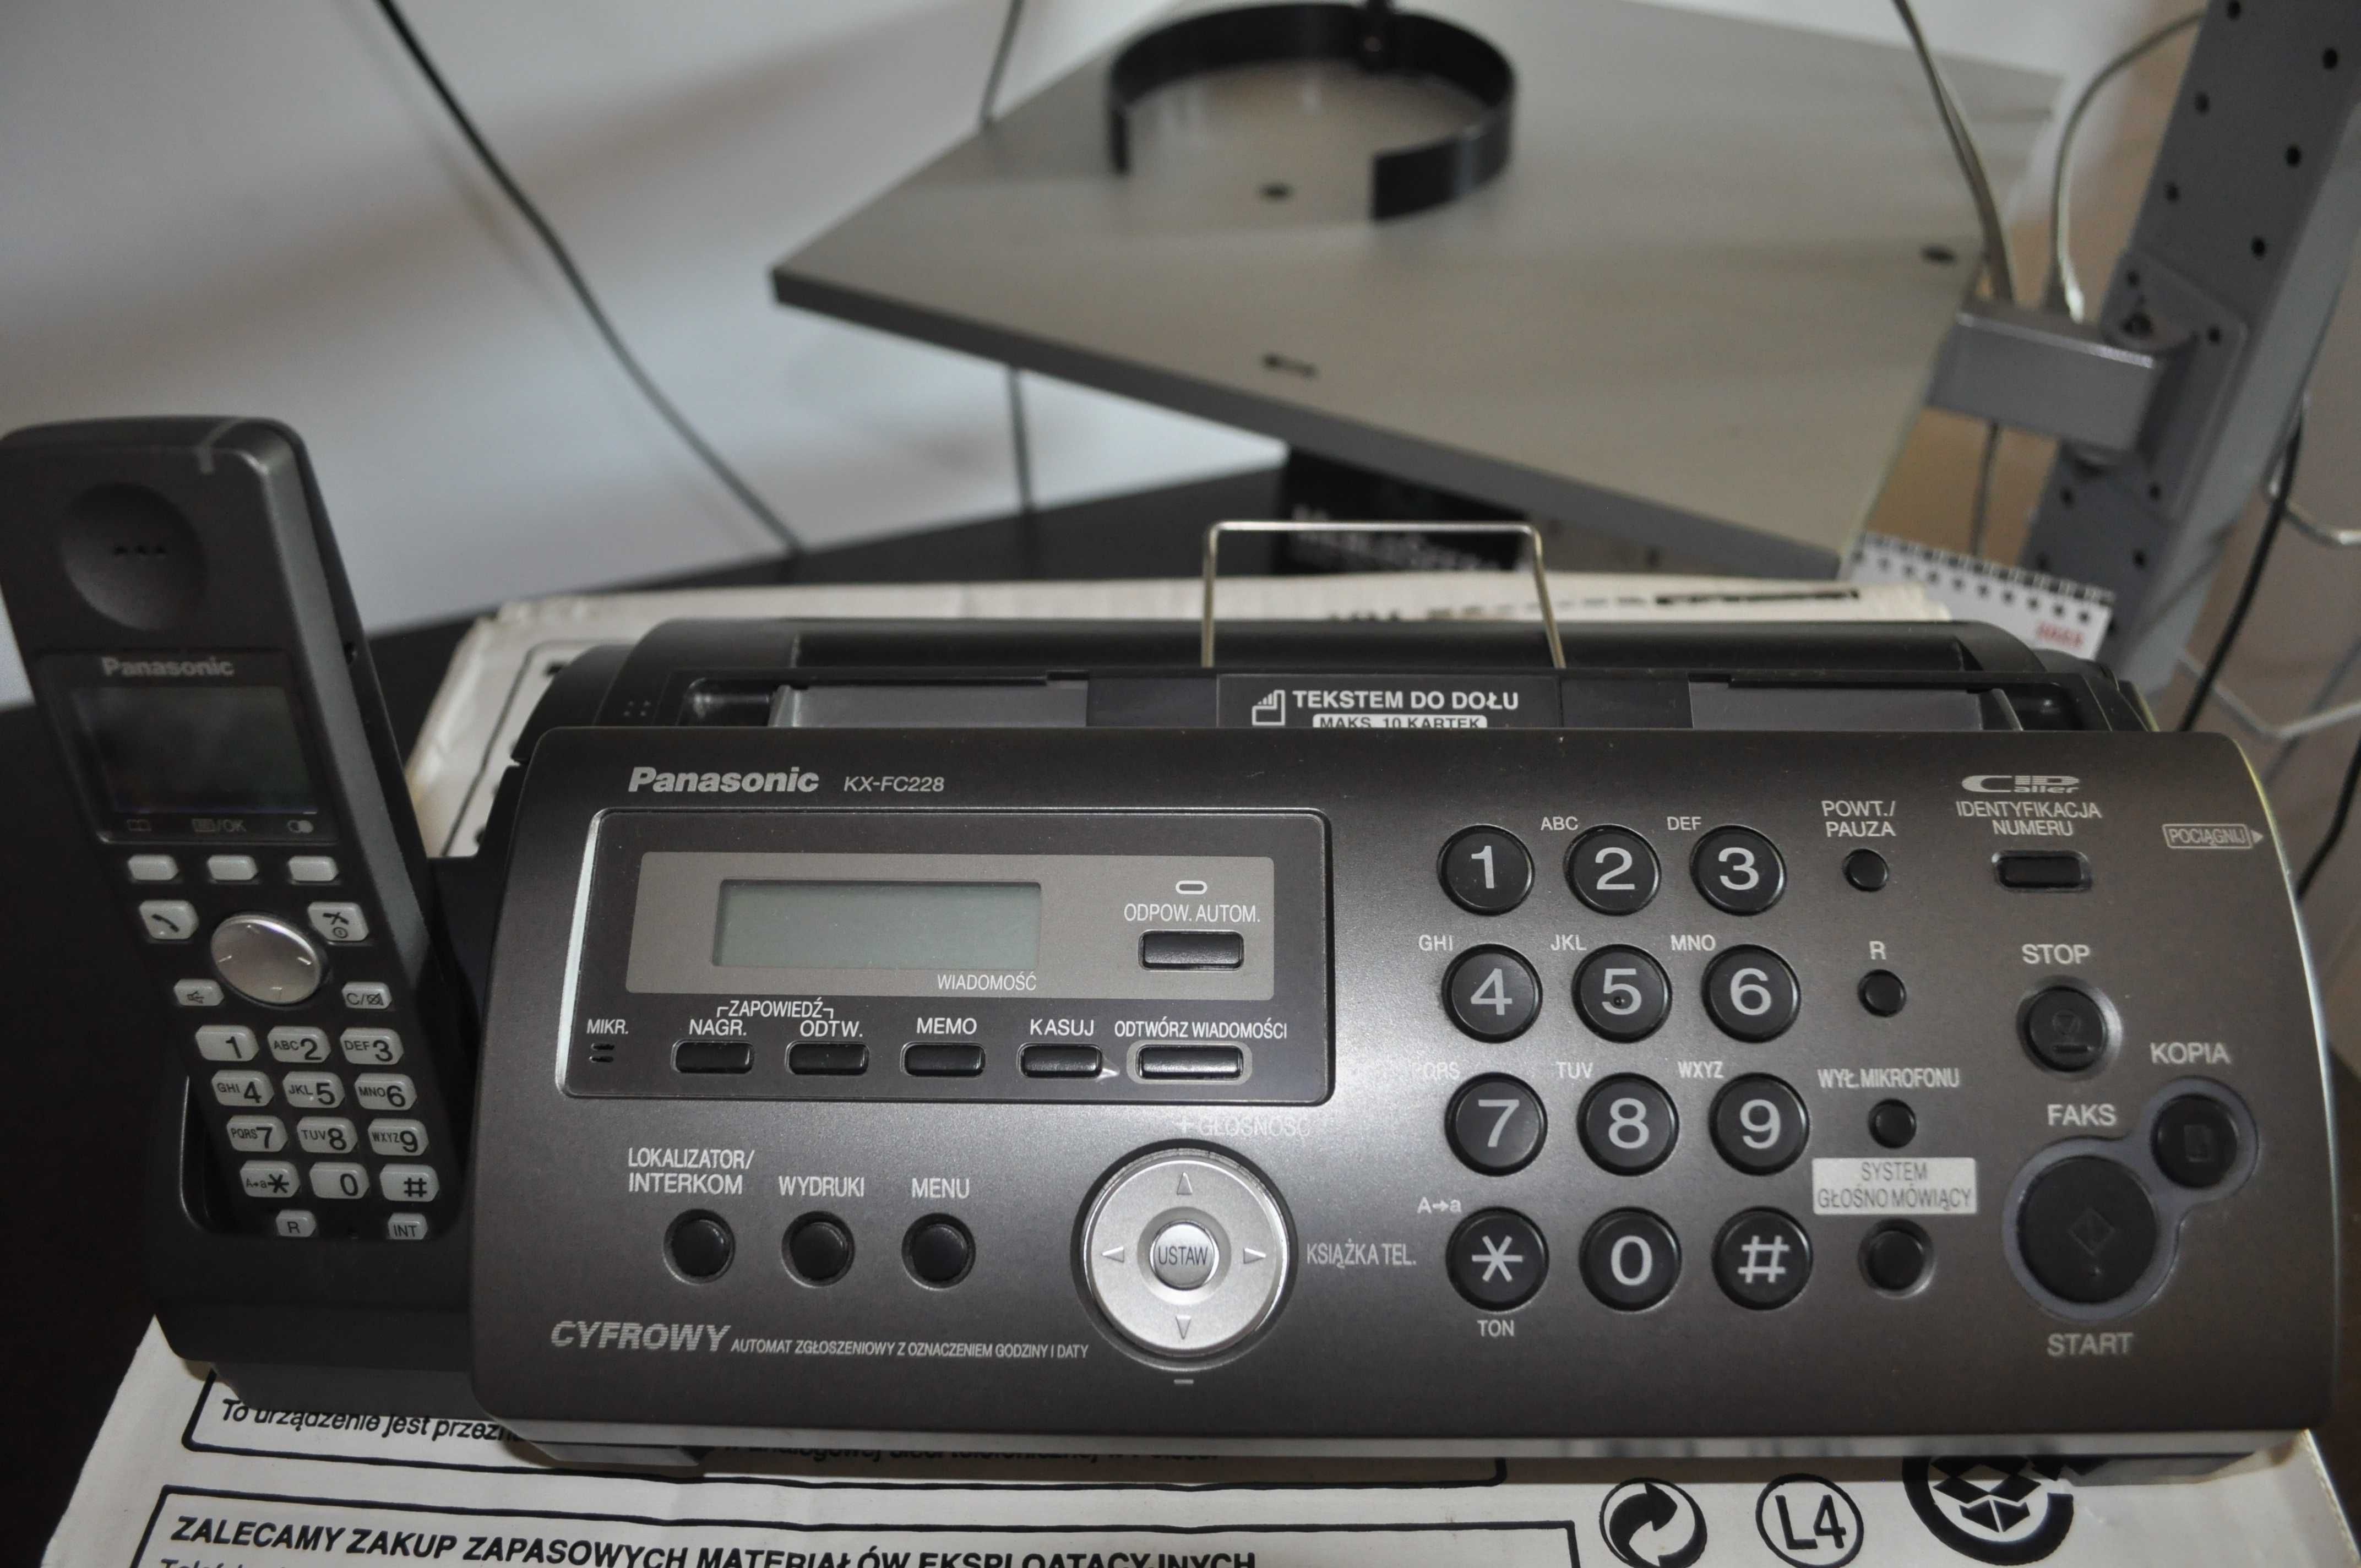 Telefon Fax biurowy PANASONIC KX-FC228 PD-T. bezprzewodowy .